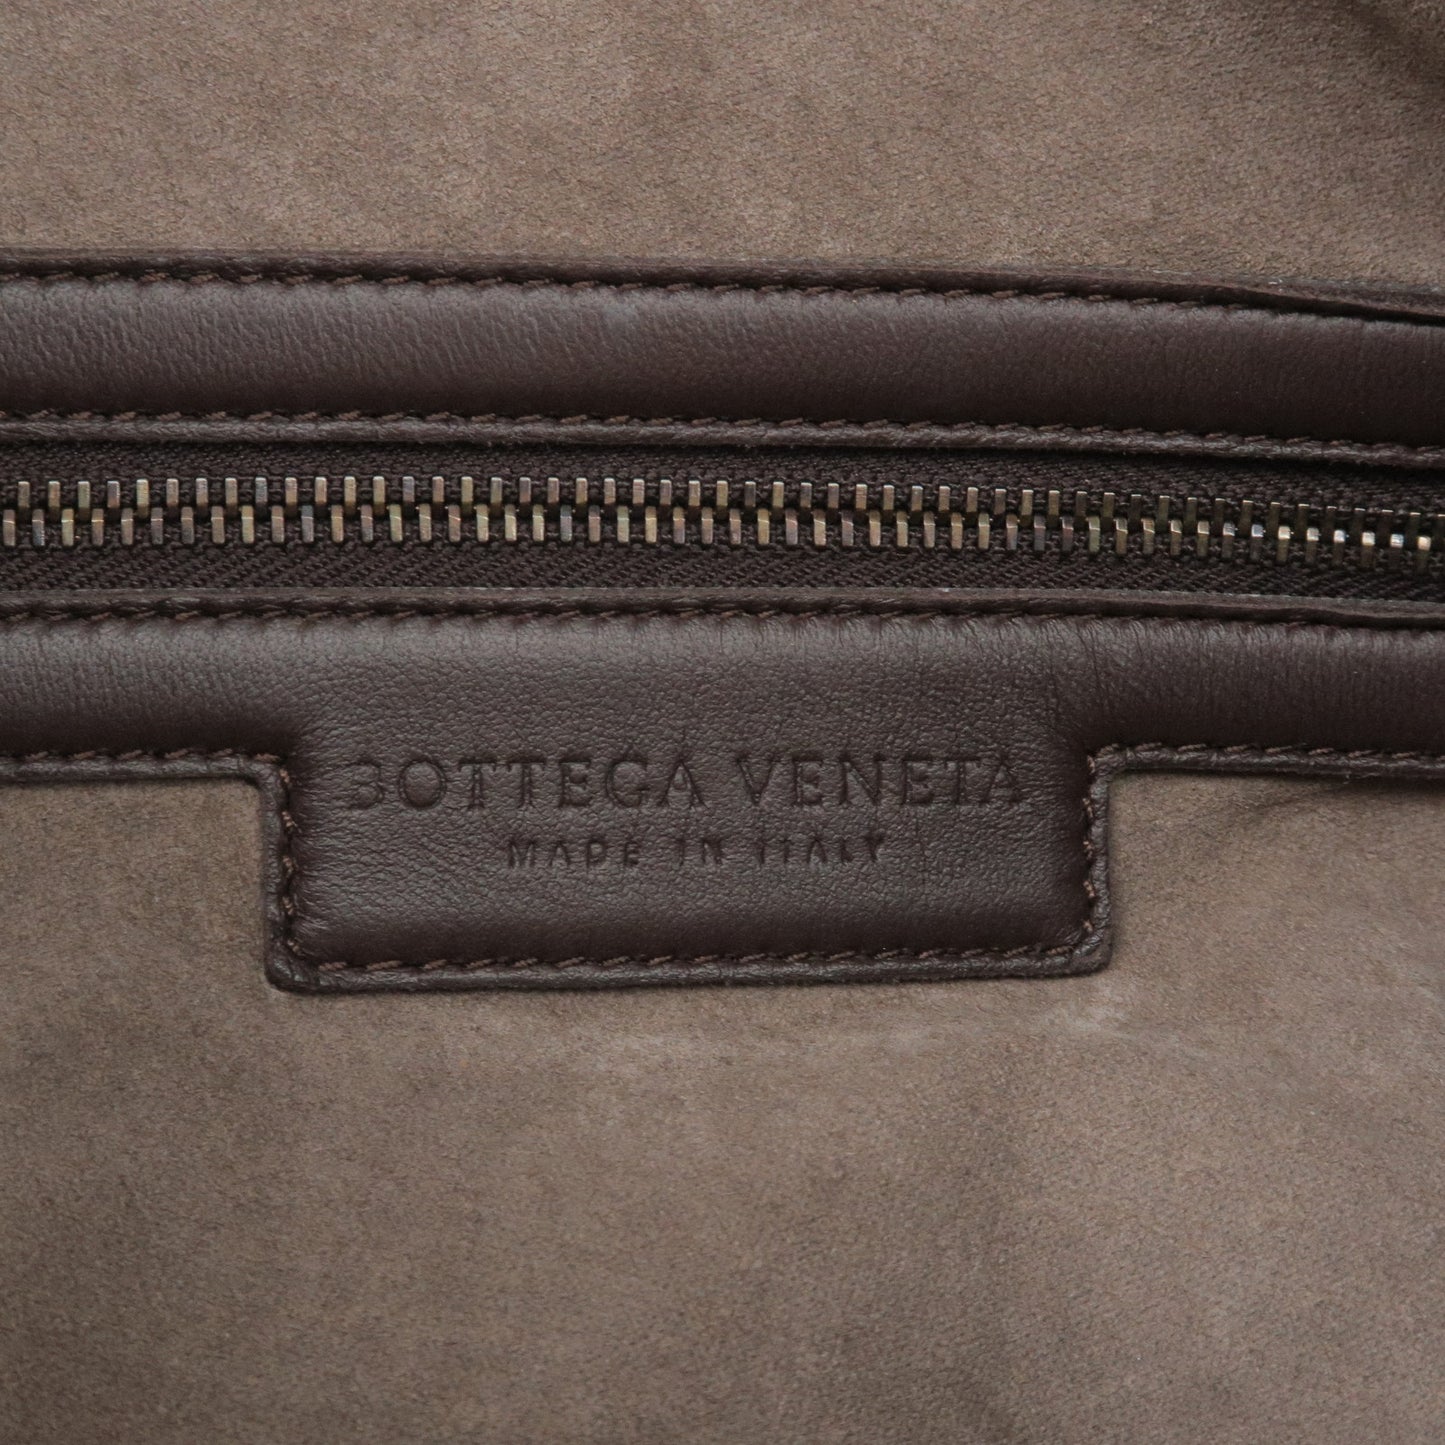 BOTTEGA VENETA Intrecciato Hobo Leather Shoulder Bag Brown 232499